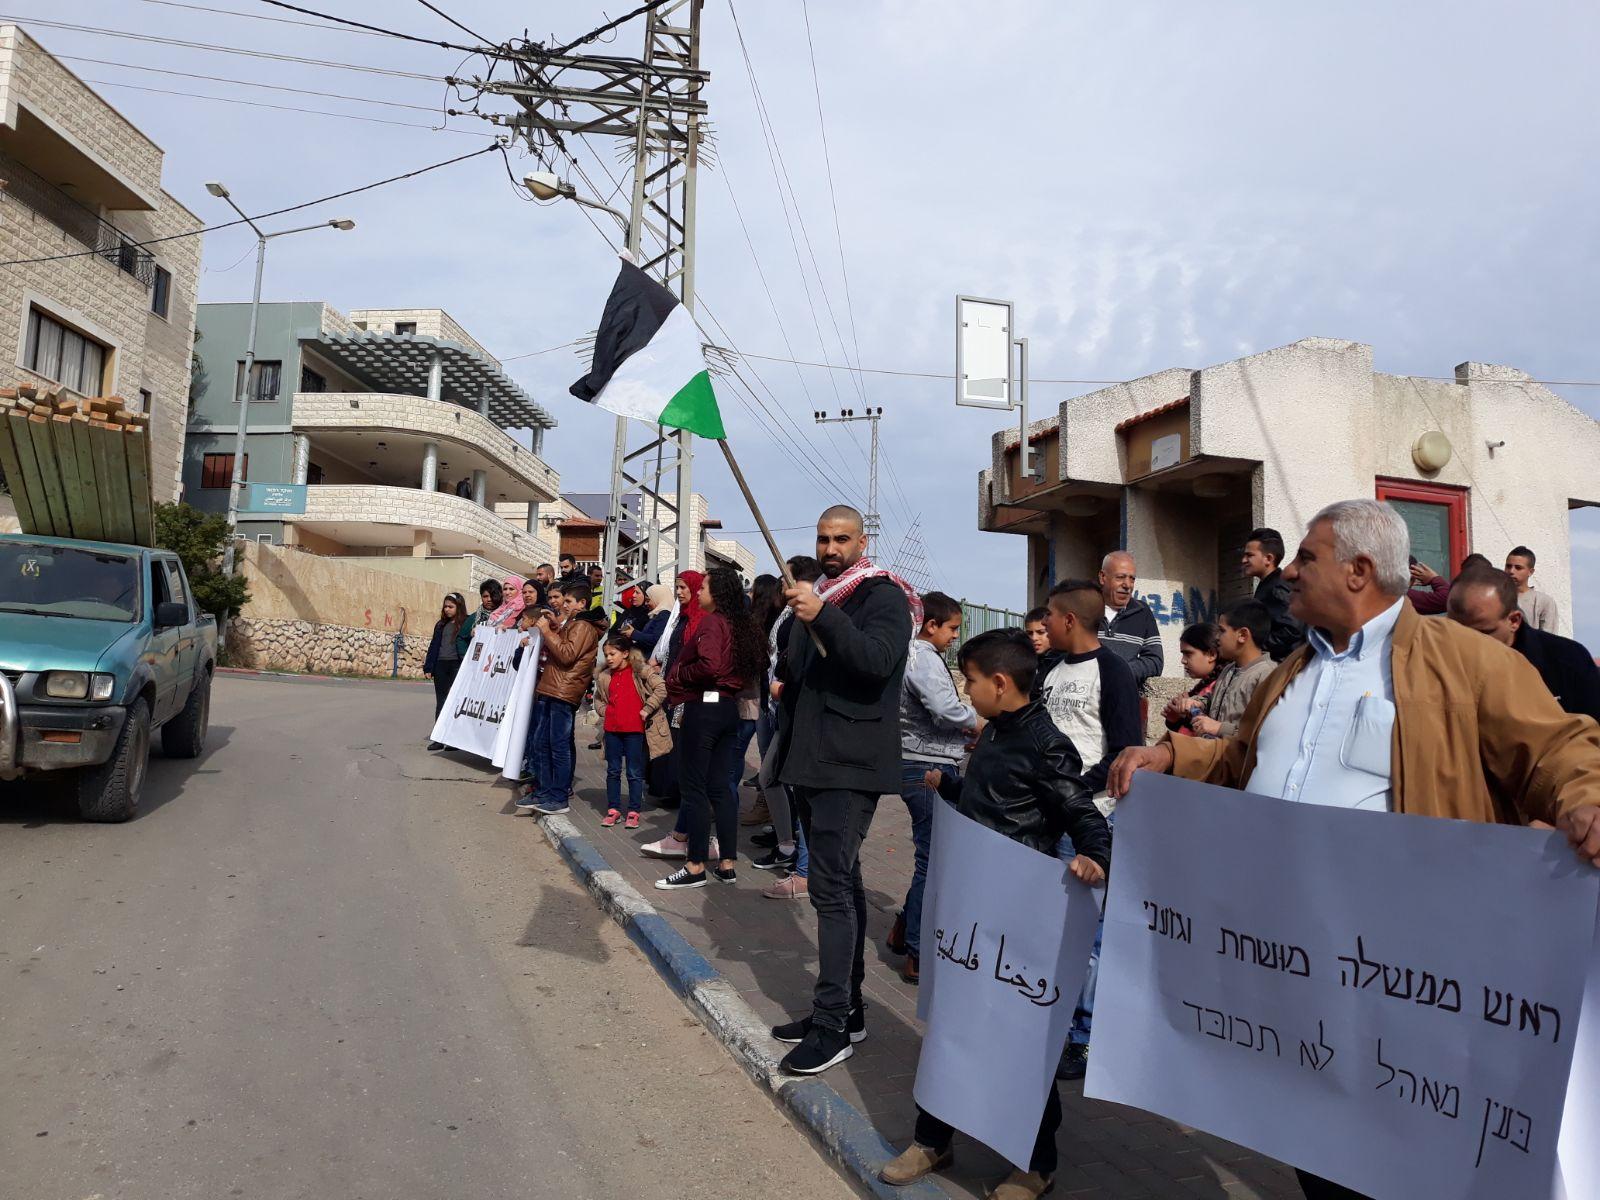  بركة: يتحتّم على فلسطينيي الداخل استقبال نتنياهو   بالصرامي على وجهه   2017122812295778